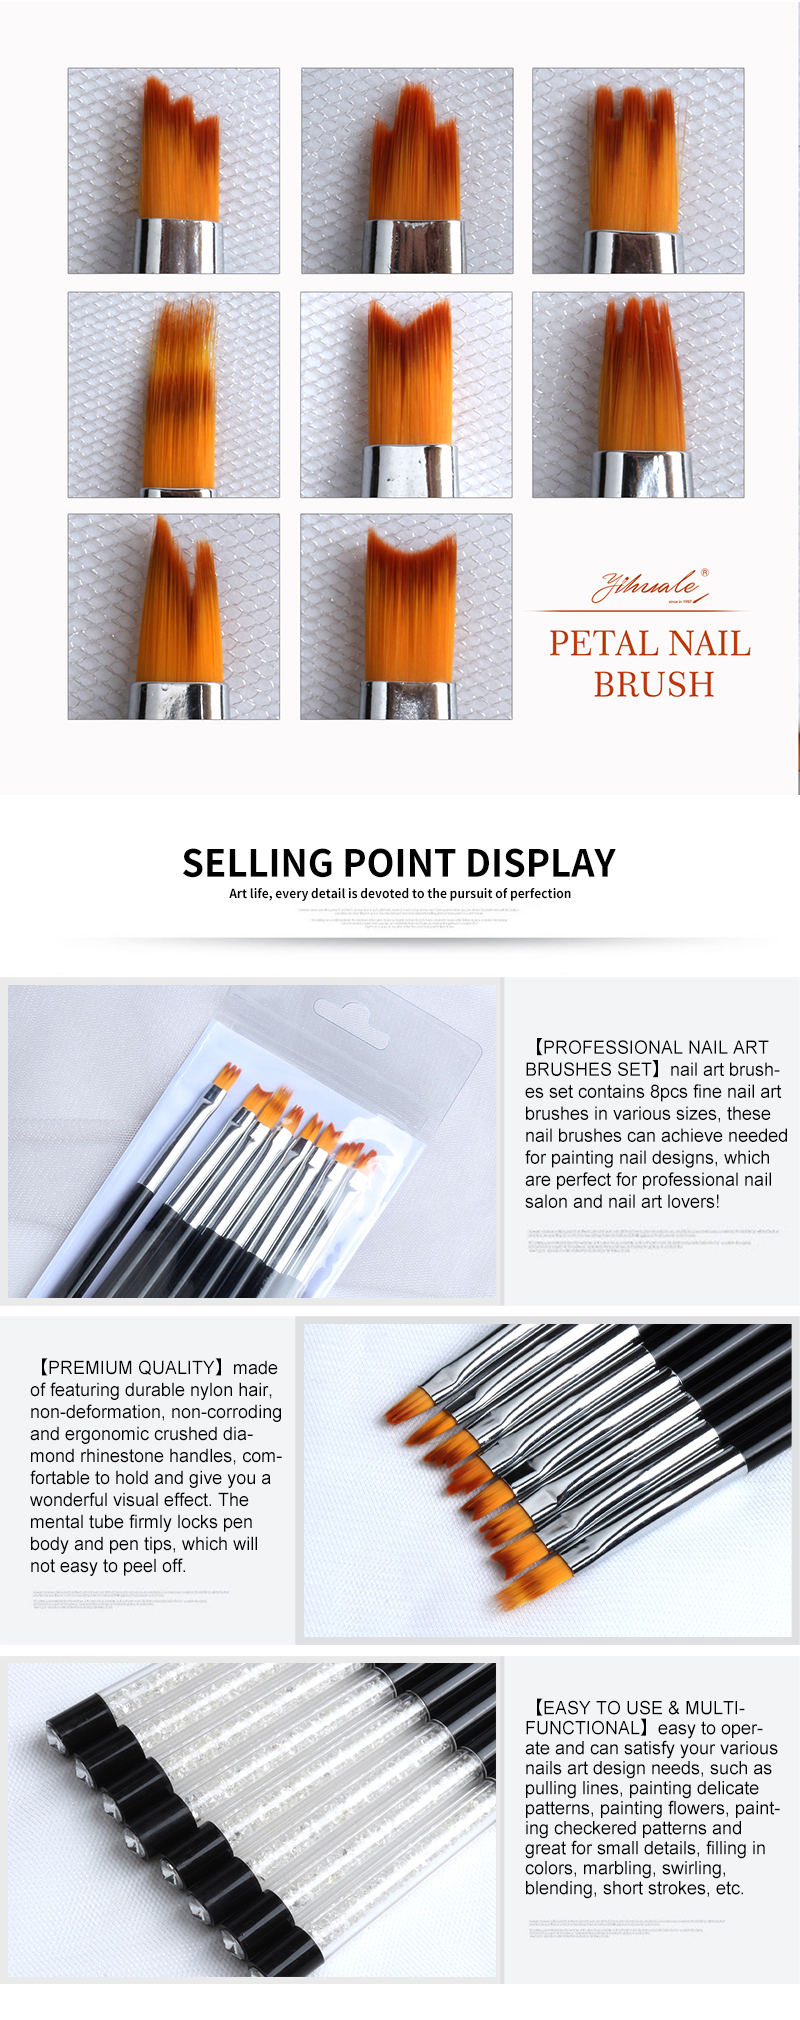 kolinsky sable brushes for acrylic nails